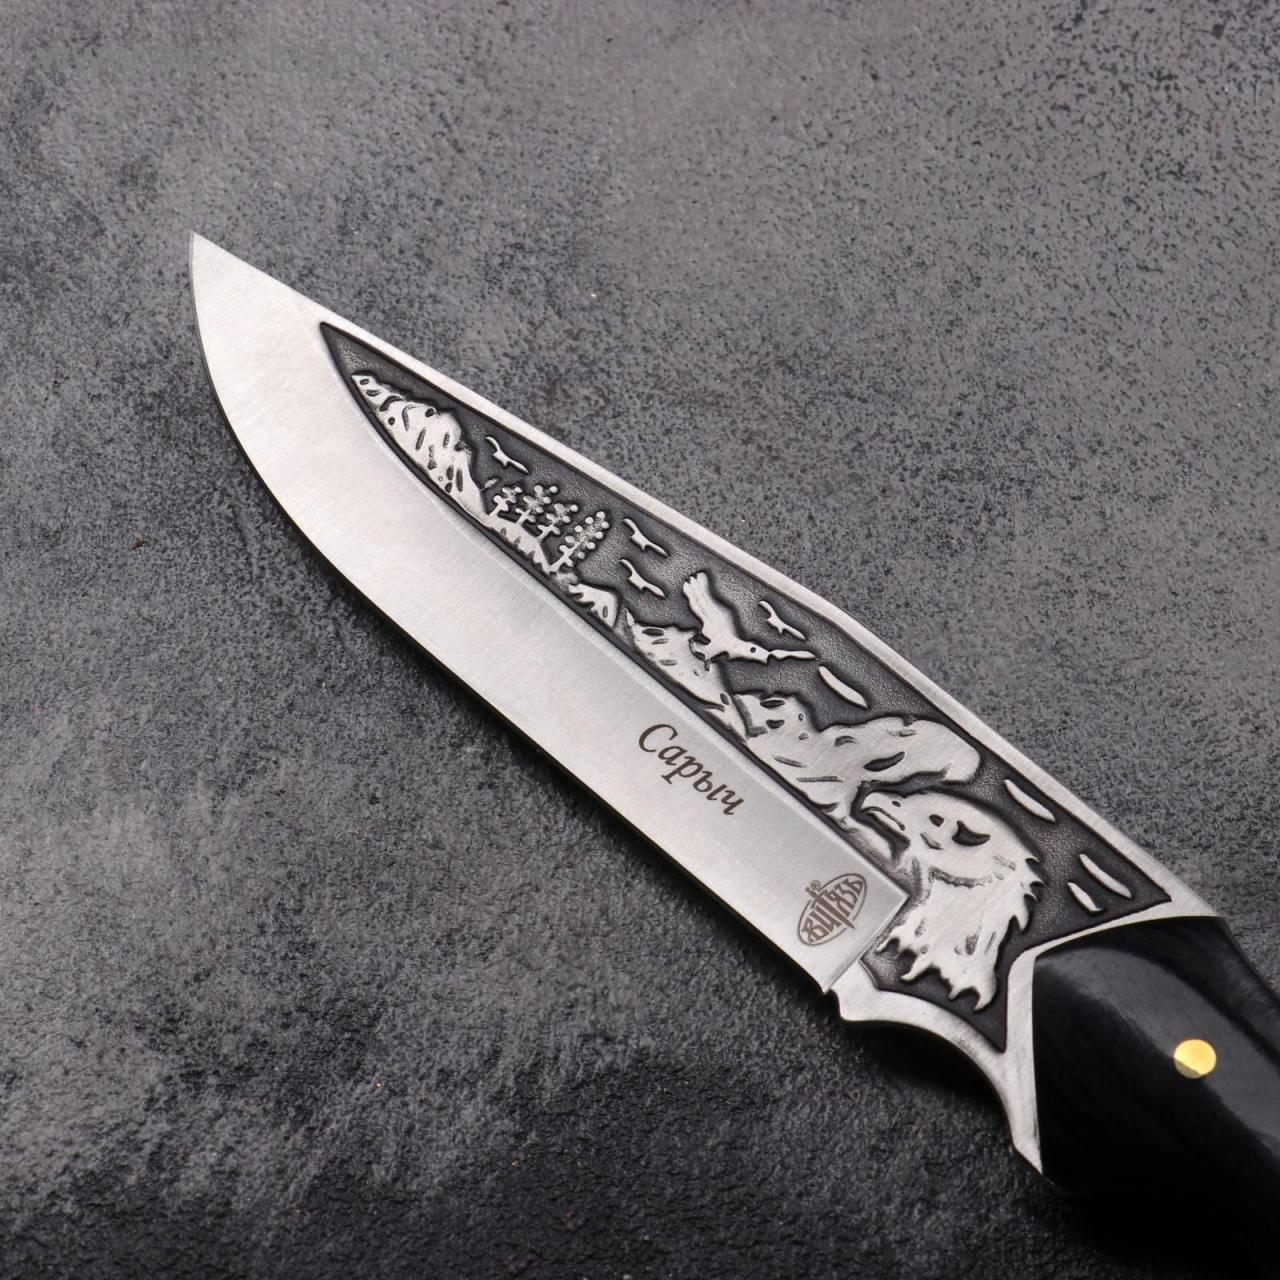 Нож охотничий "Сарыч" сталь - 50х14, рукоять - дерево, 25 см (4863183) -  Купить по цене от 985.00 руб. | Интернет магазин SIMA-LAND.RU